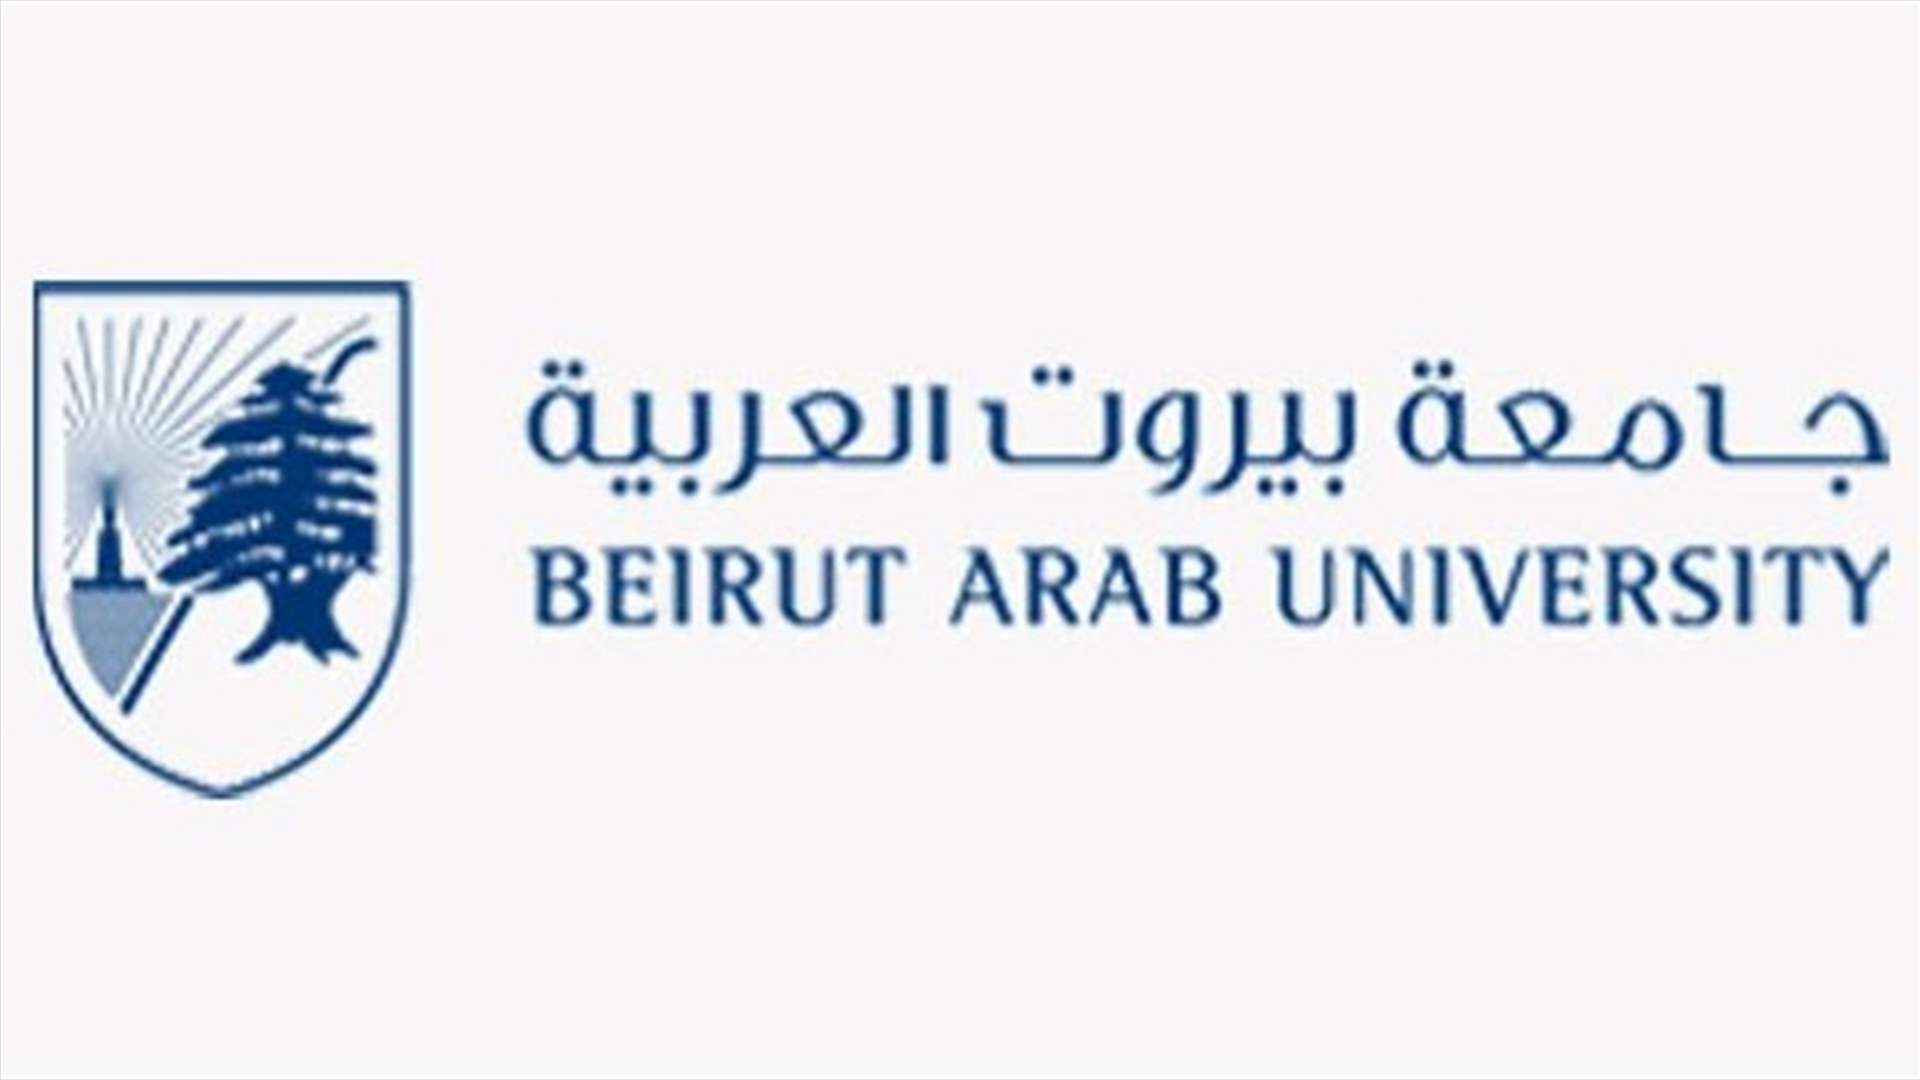 تعليق الدروس في جامعة بيروت العربية فرع الدبية بسبب الحرائق